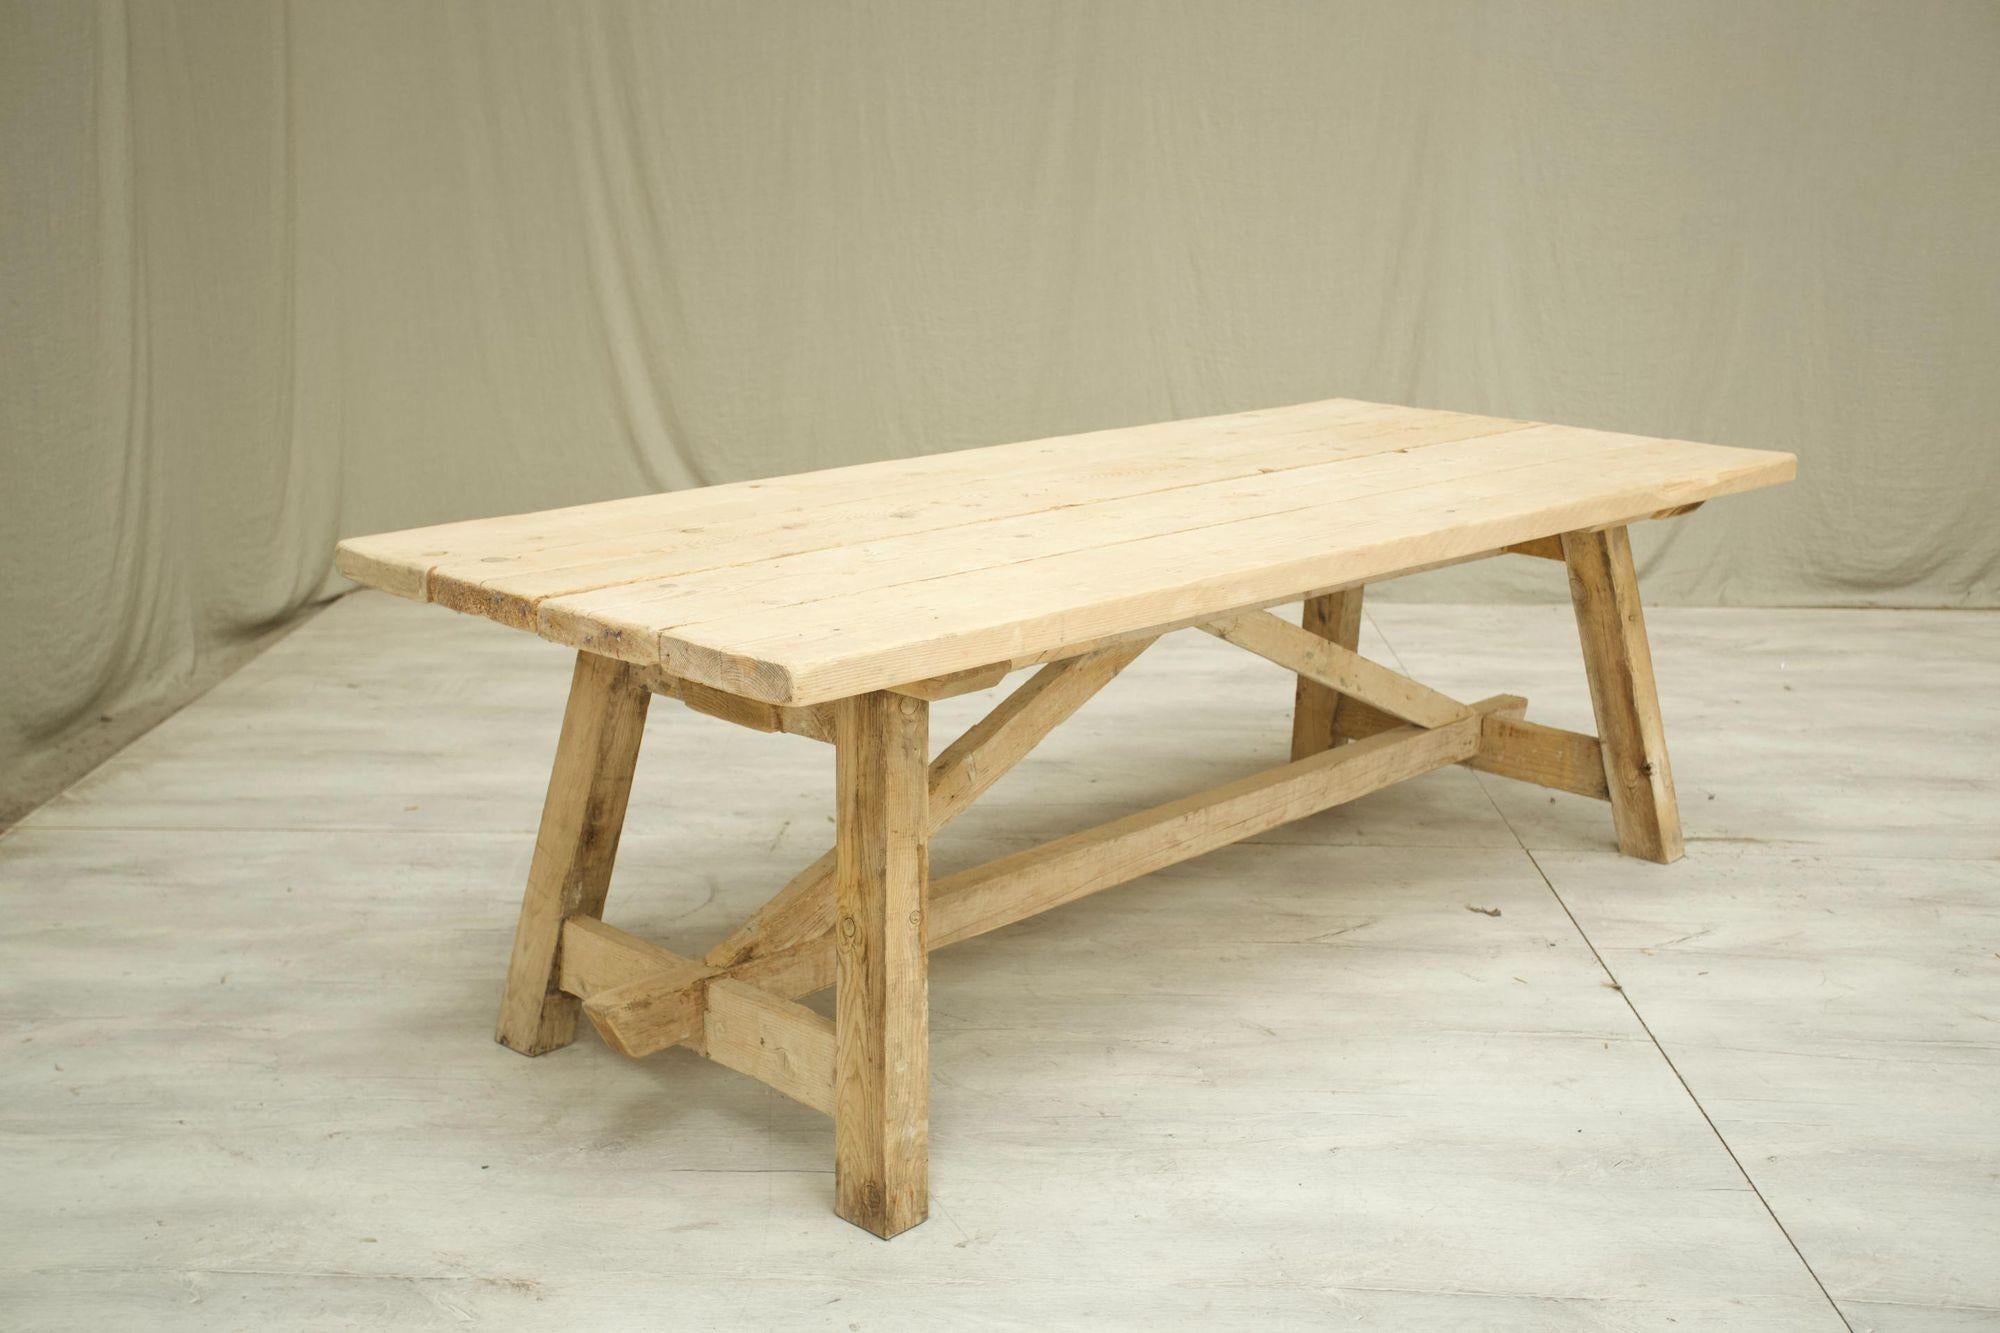 Ce sont les derniers modèles de notre gamme de tables à manger sur mesure. Nous les faisons fabriquer dans le sud de la France par un artisan talentueux qui utilise d'épaisses planches de pin récupérées à l'époque pour créer ces tables à manger